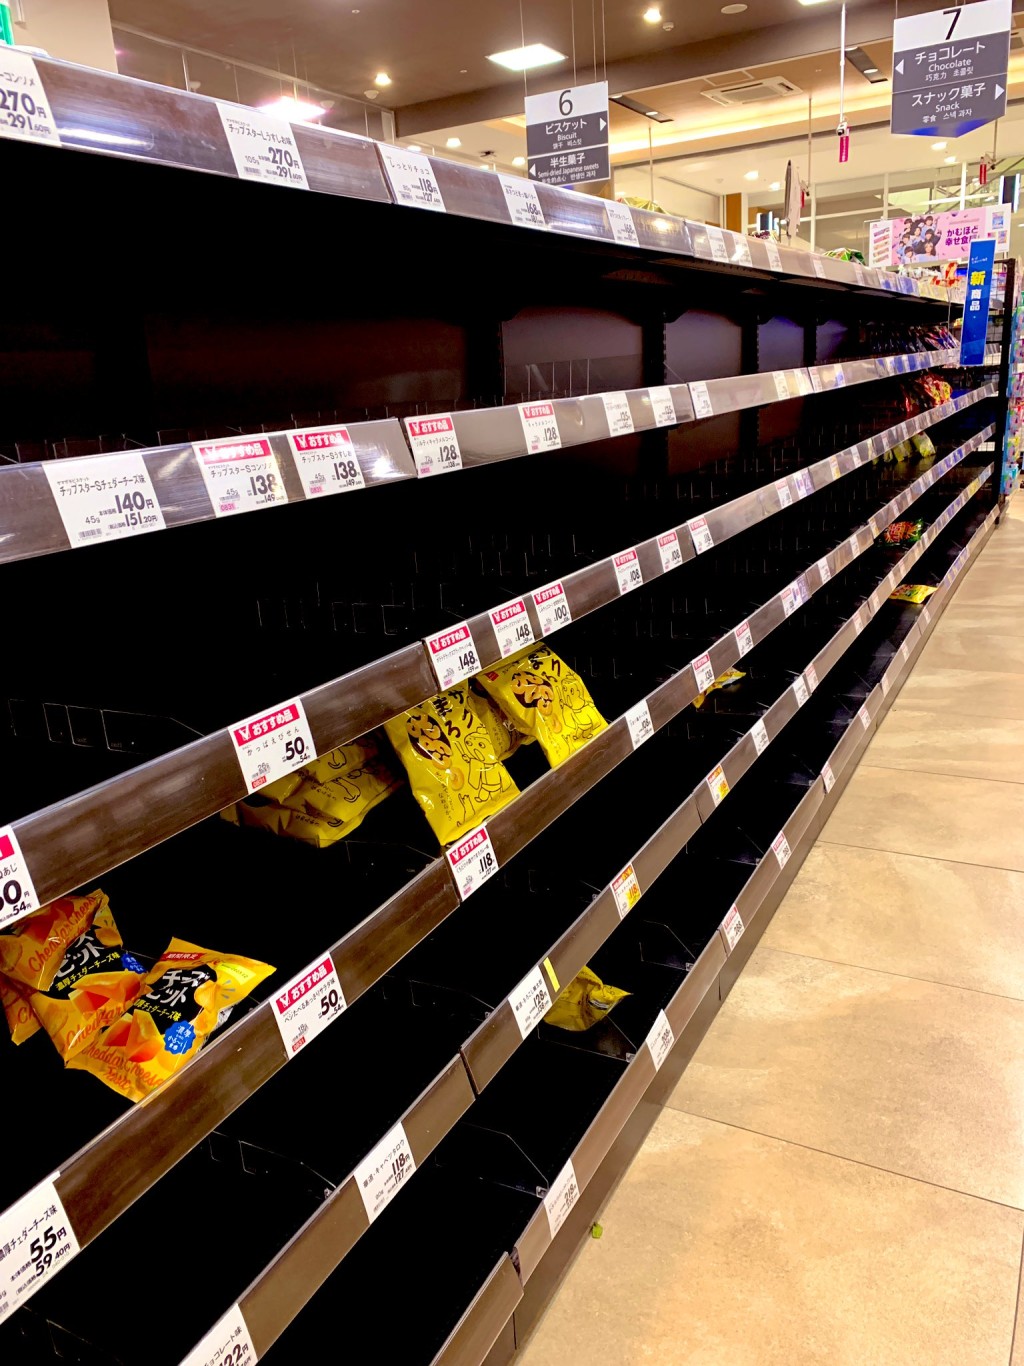 超市零食貨架只剩三數包零食。 Twitter